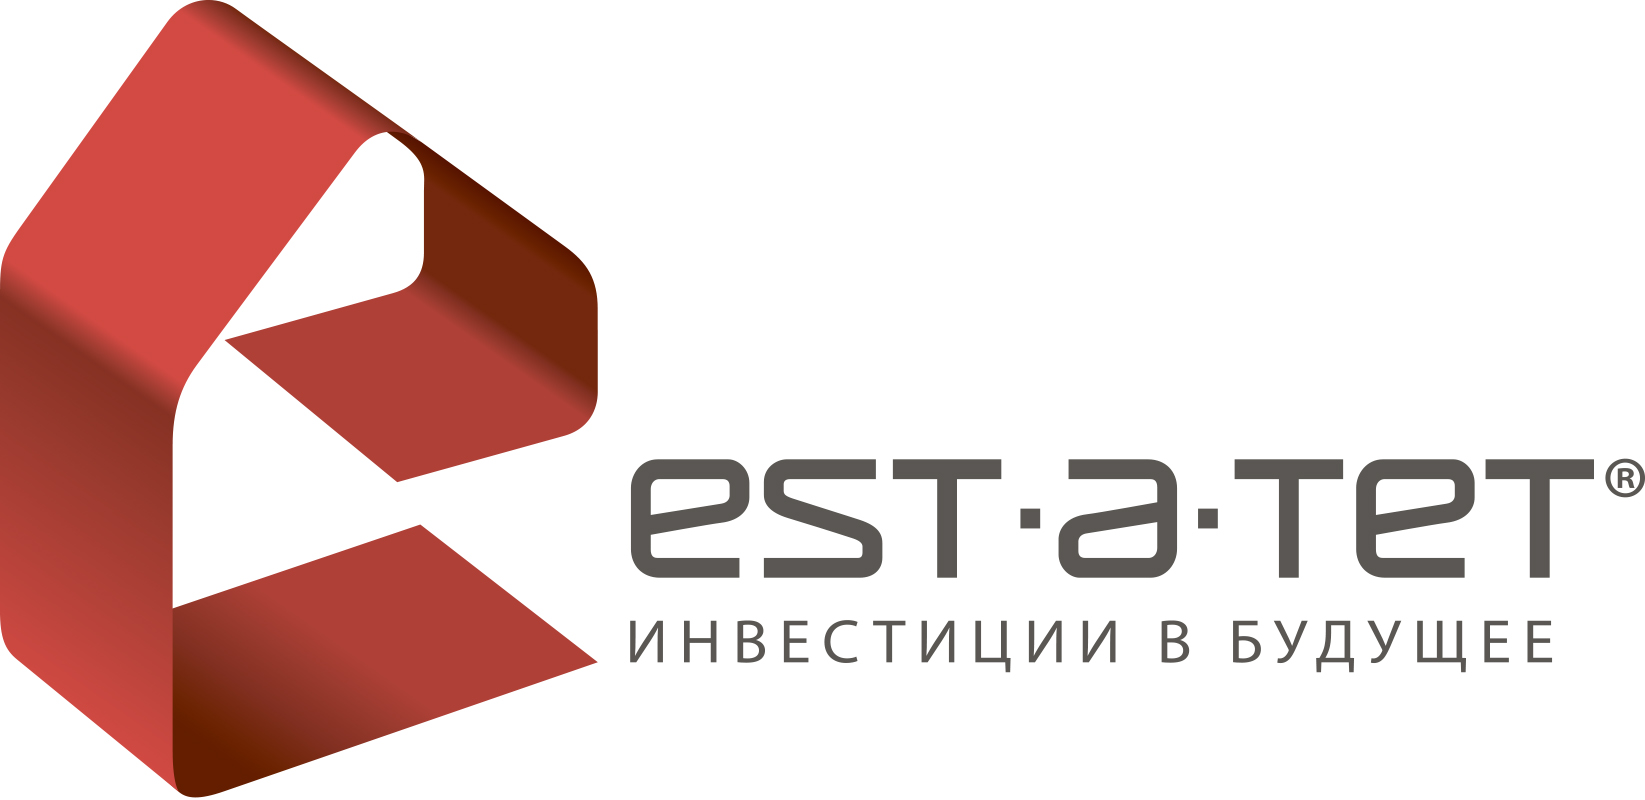 А тет ев. Est a Tet логотип. Est в логотипе. Est. В est-a-Tet дома.